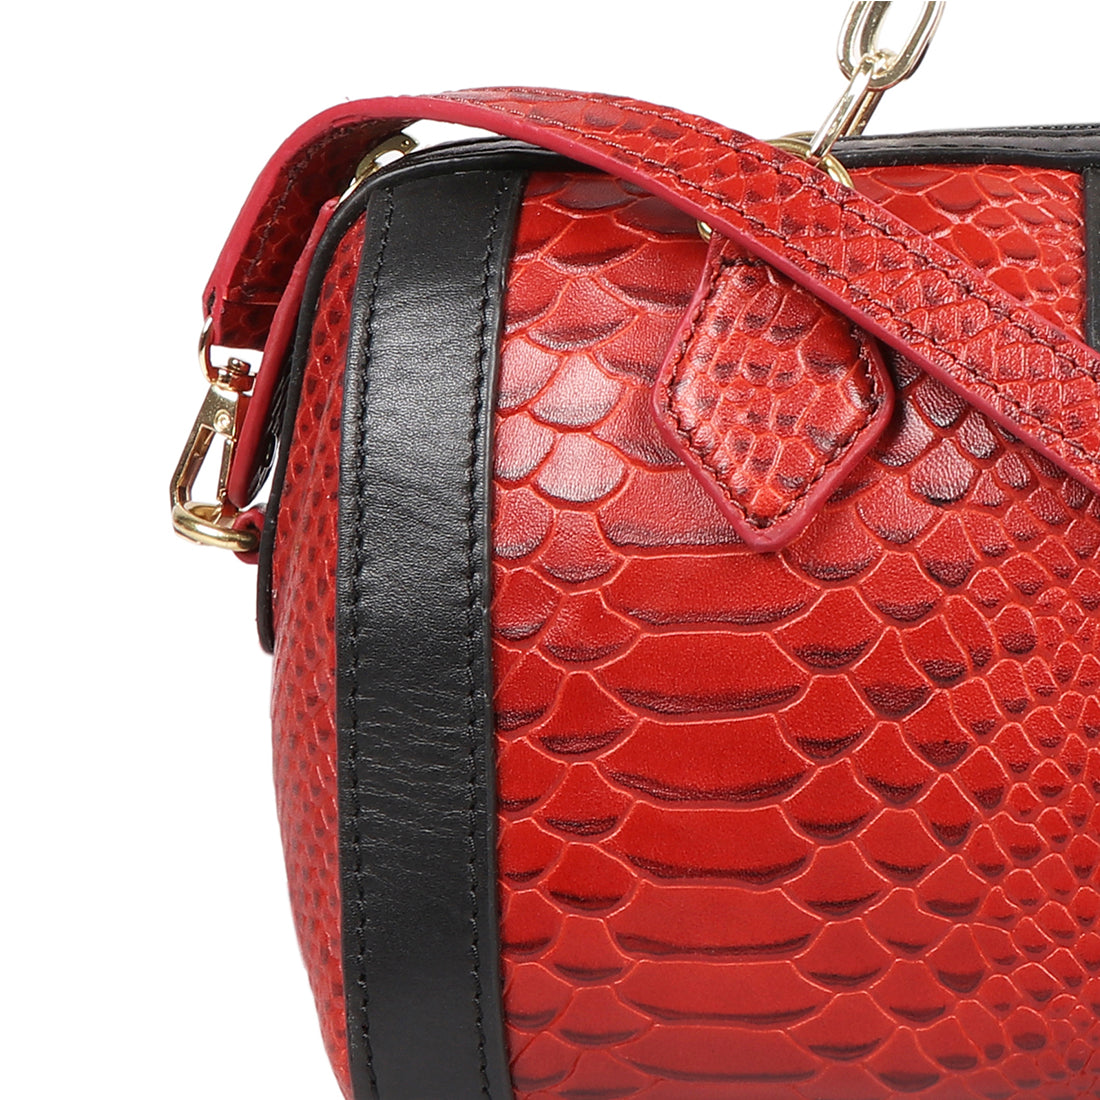 Shoulder Bag - Brown/snakeskin-patterned - Ladies | H&M US